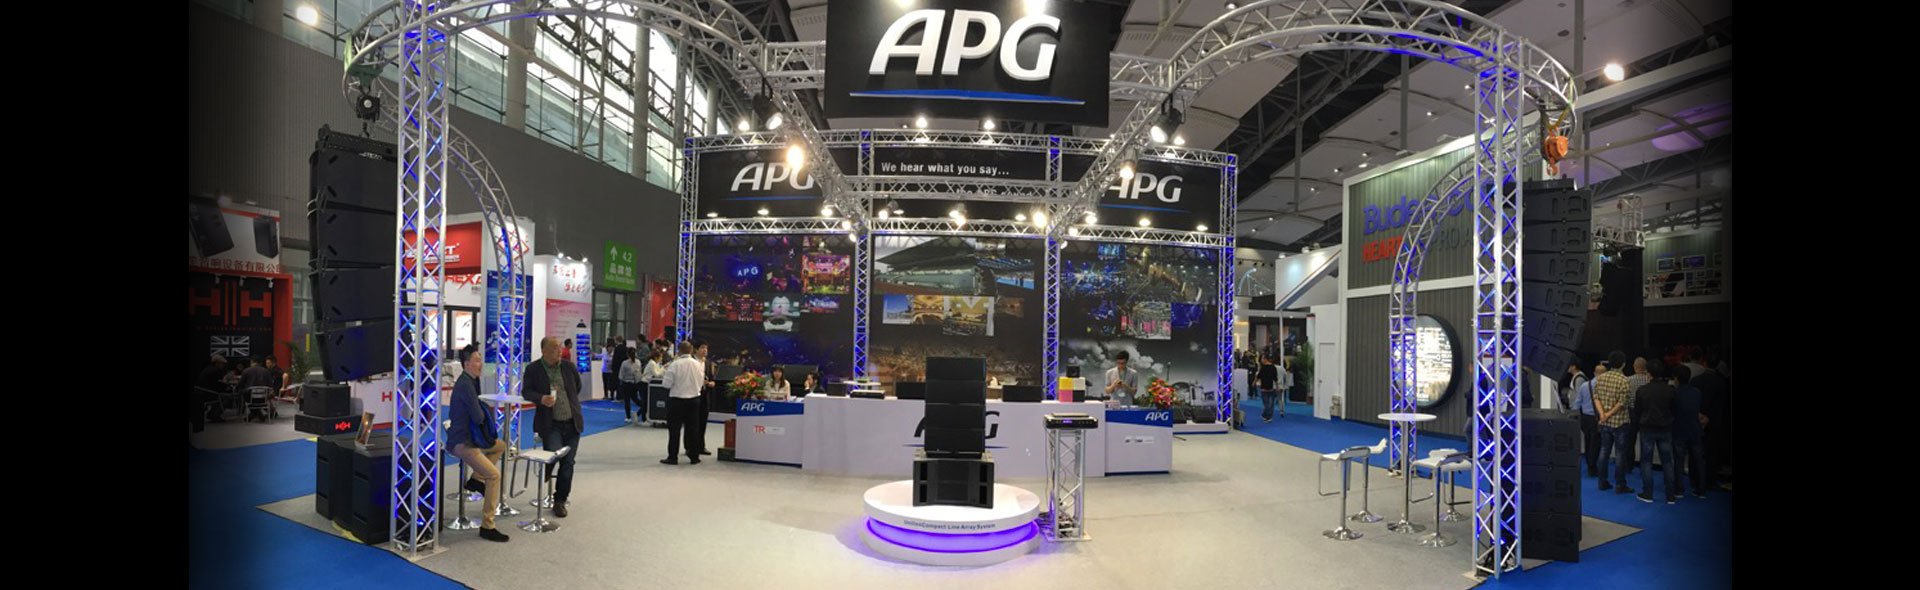 APG renforce sa présence en Asie avec la naissance de nouveaux partenariats